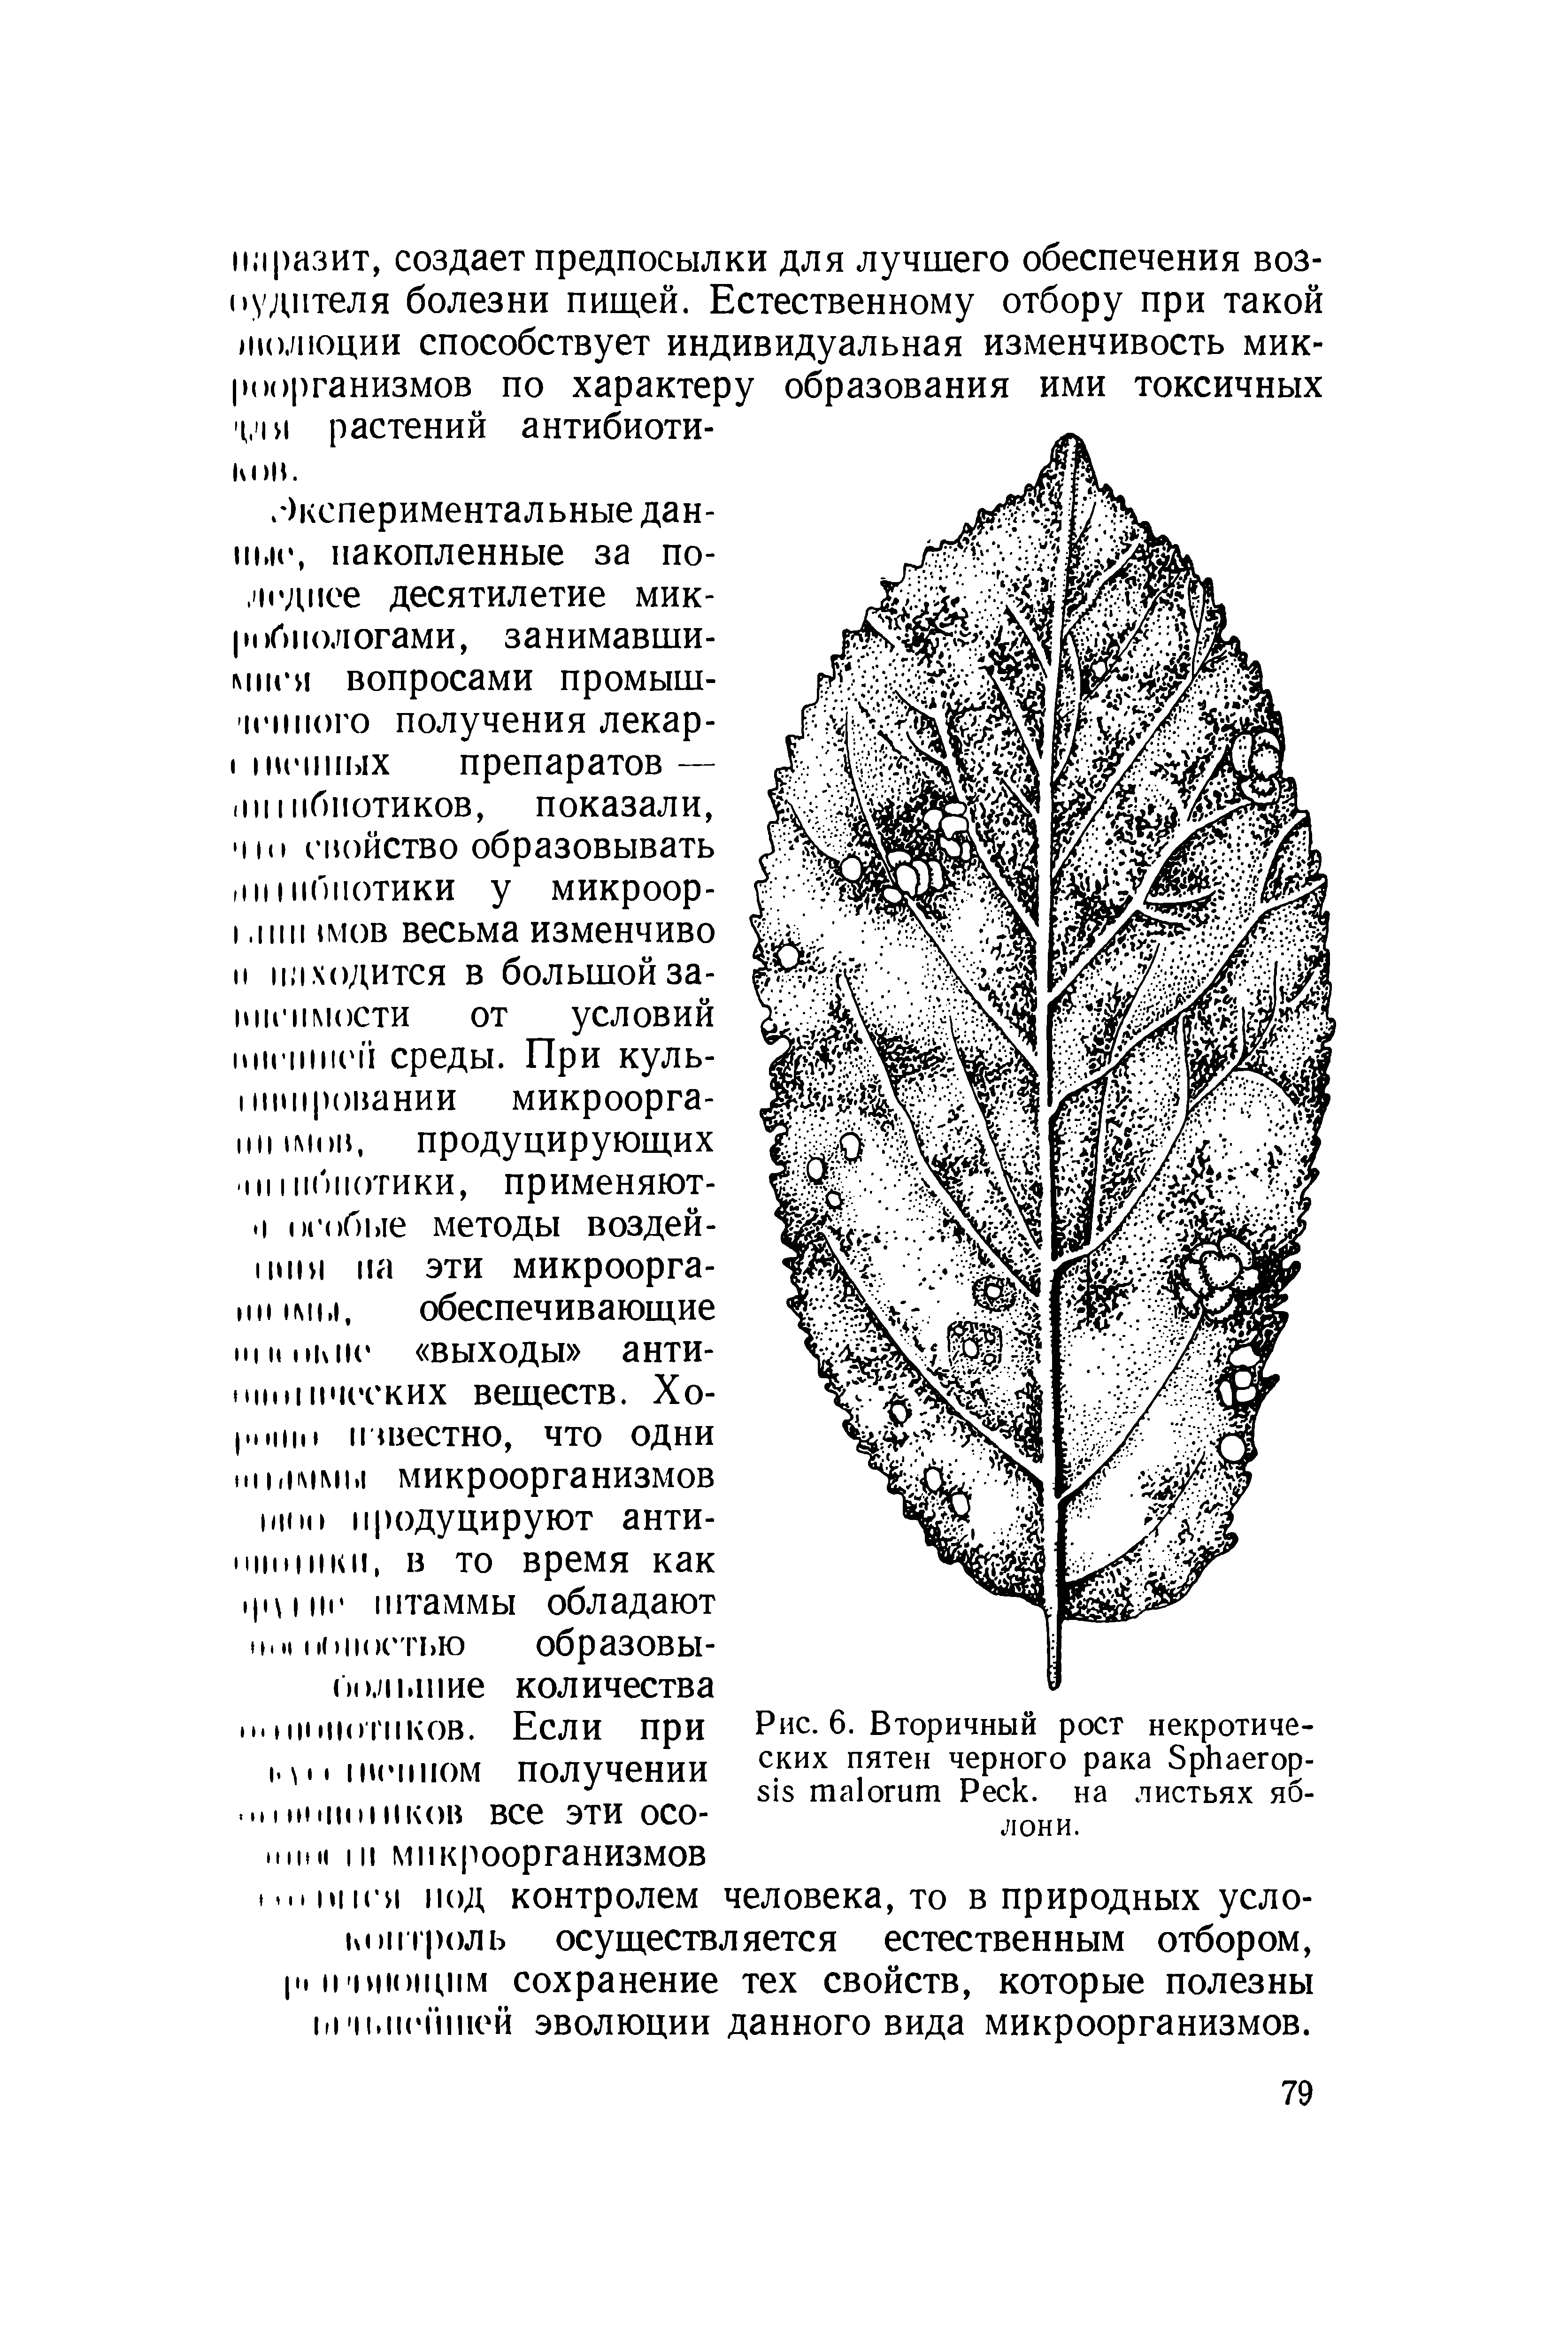 Рис. 6. Вторичный рост некротических пятен черного рака S - P , на листьях яблони.